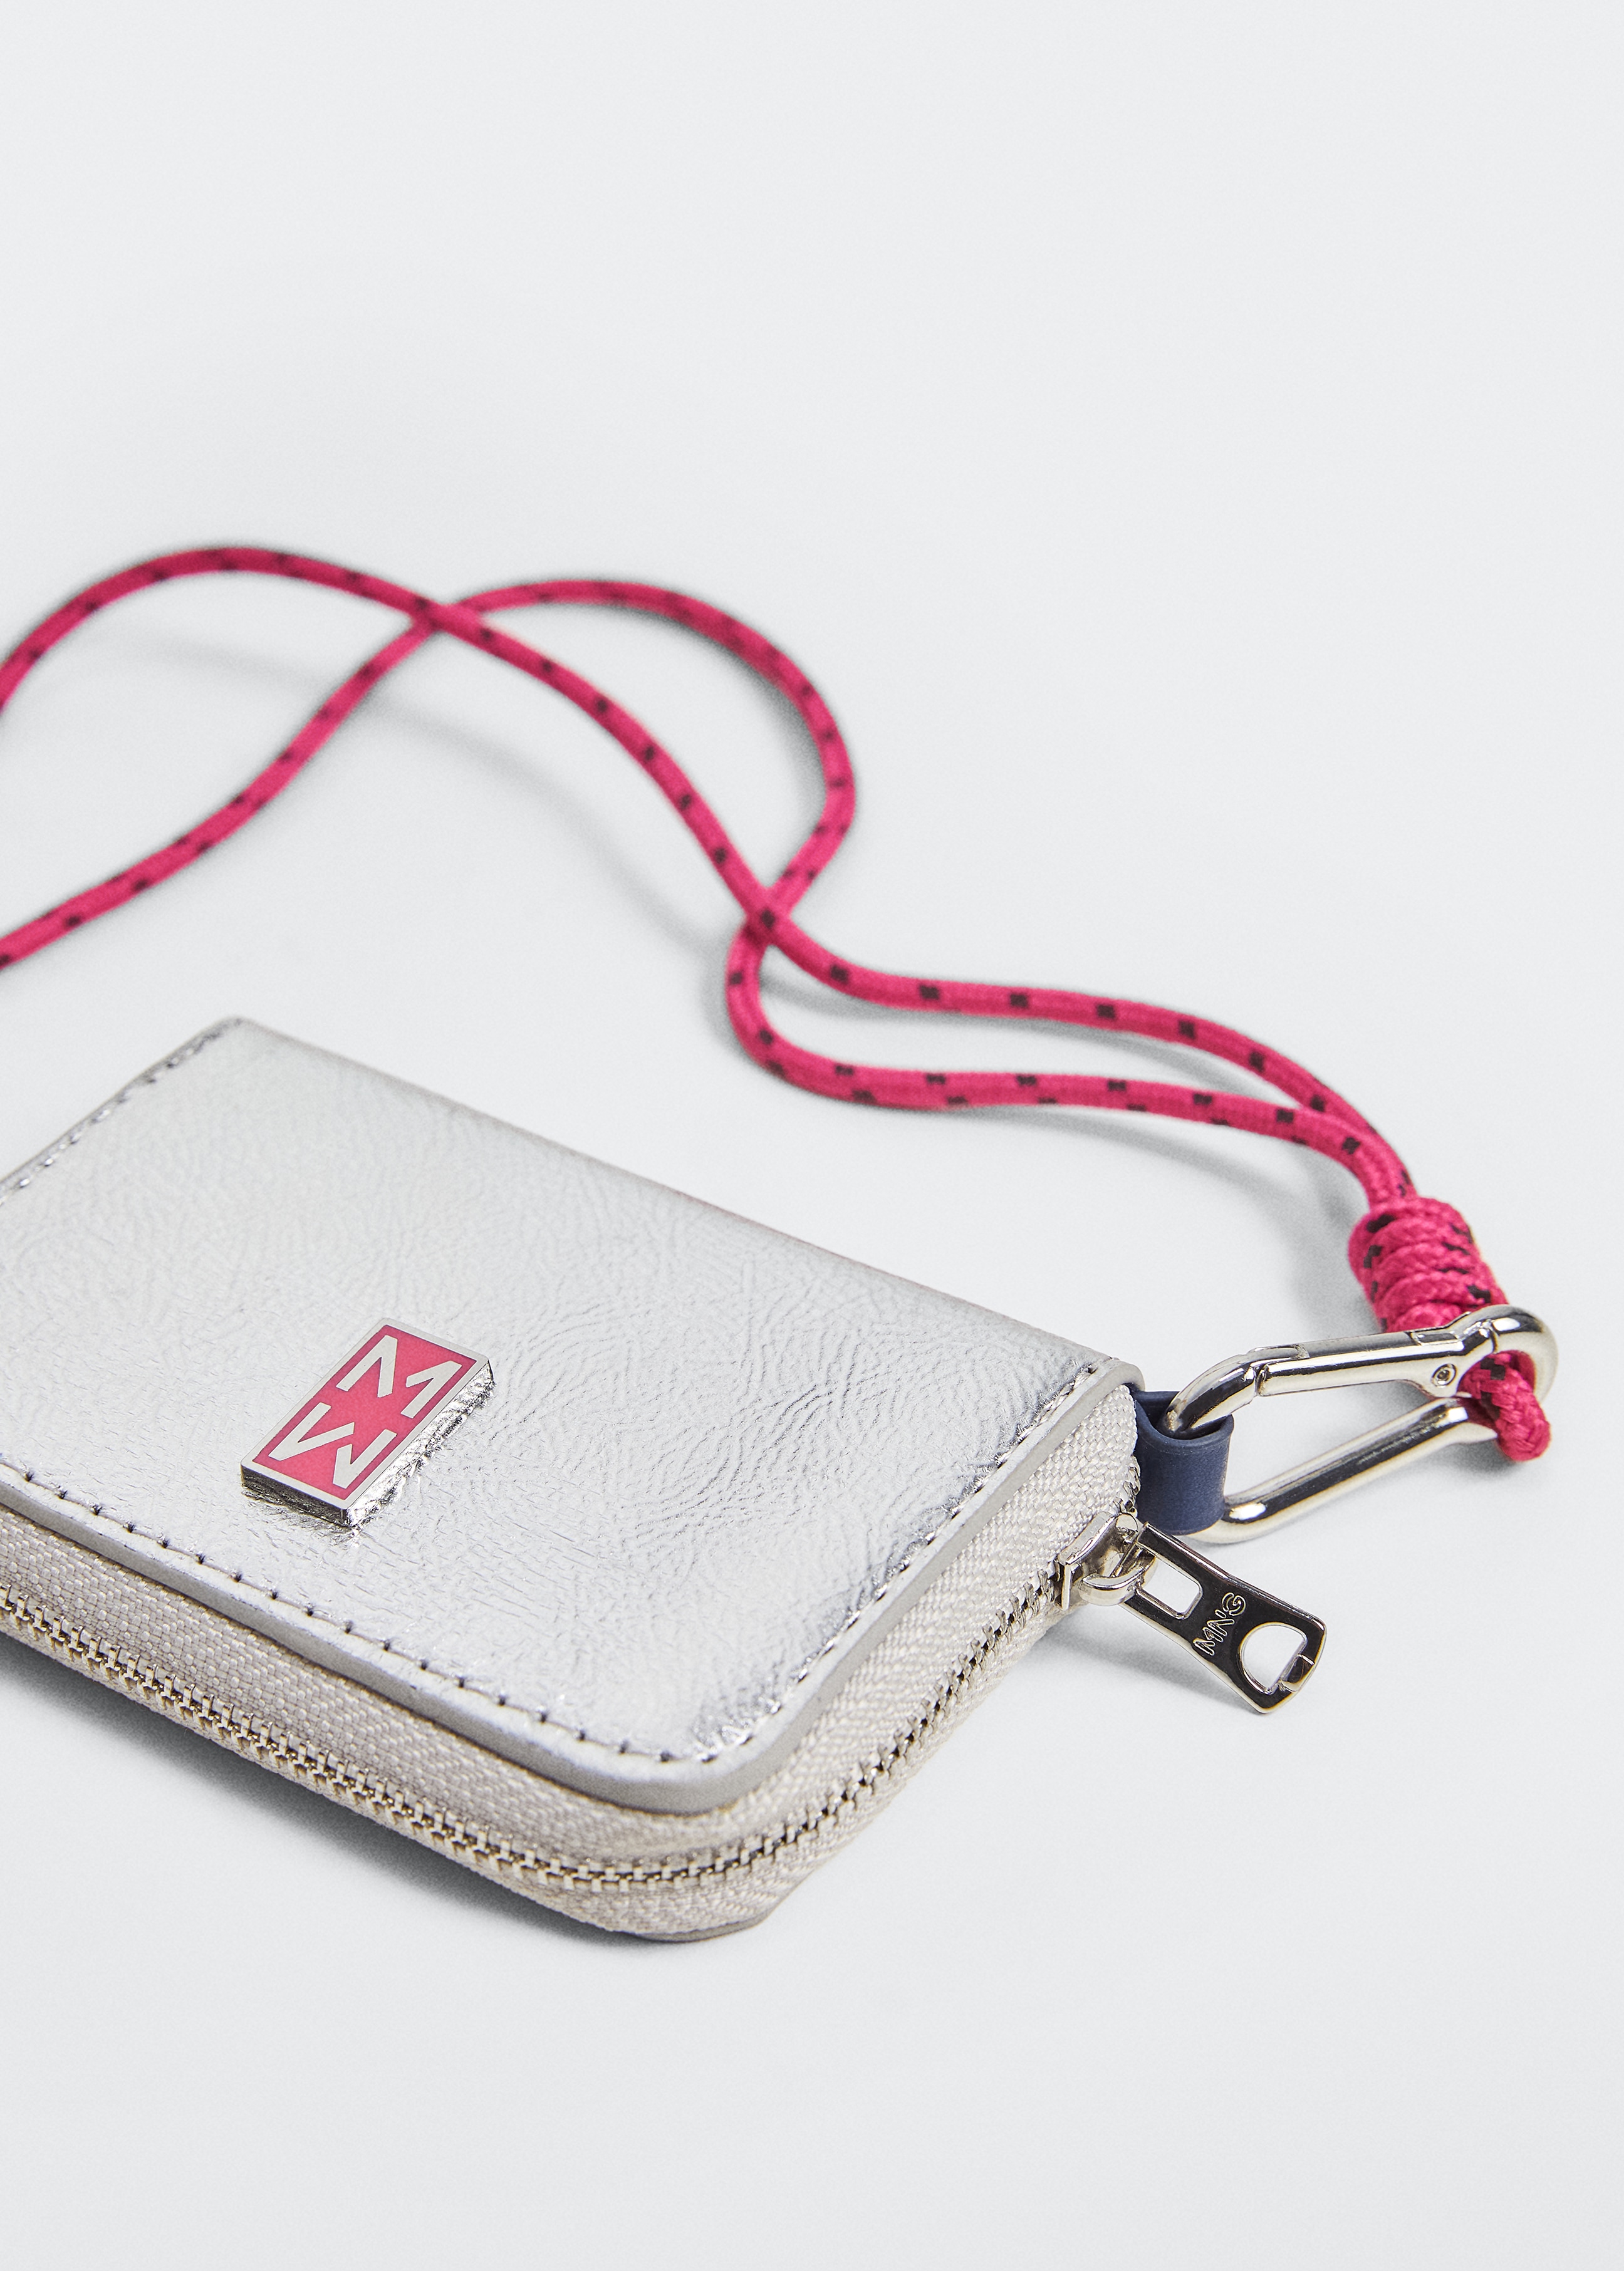 Mini rope purse - Medium plane